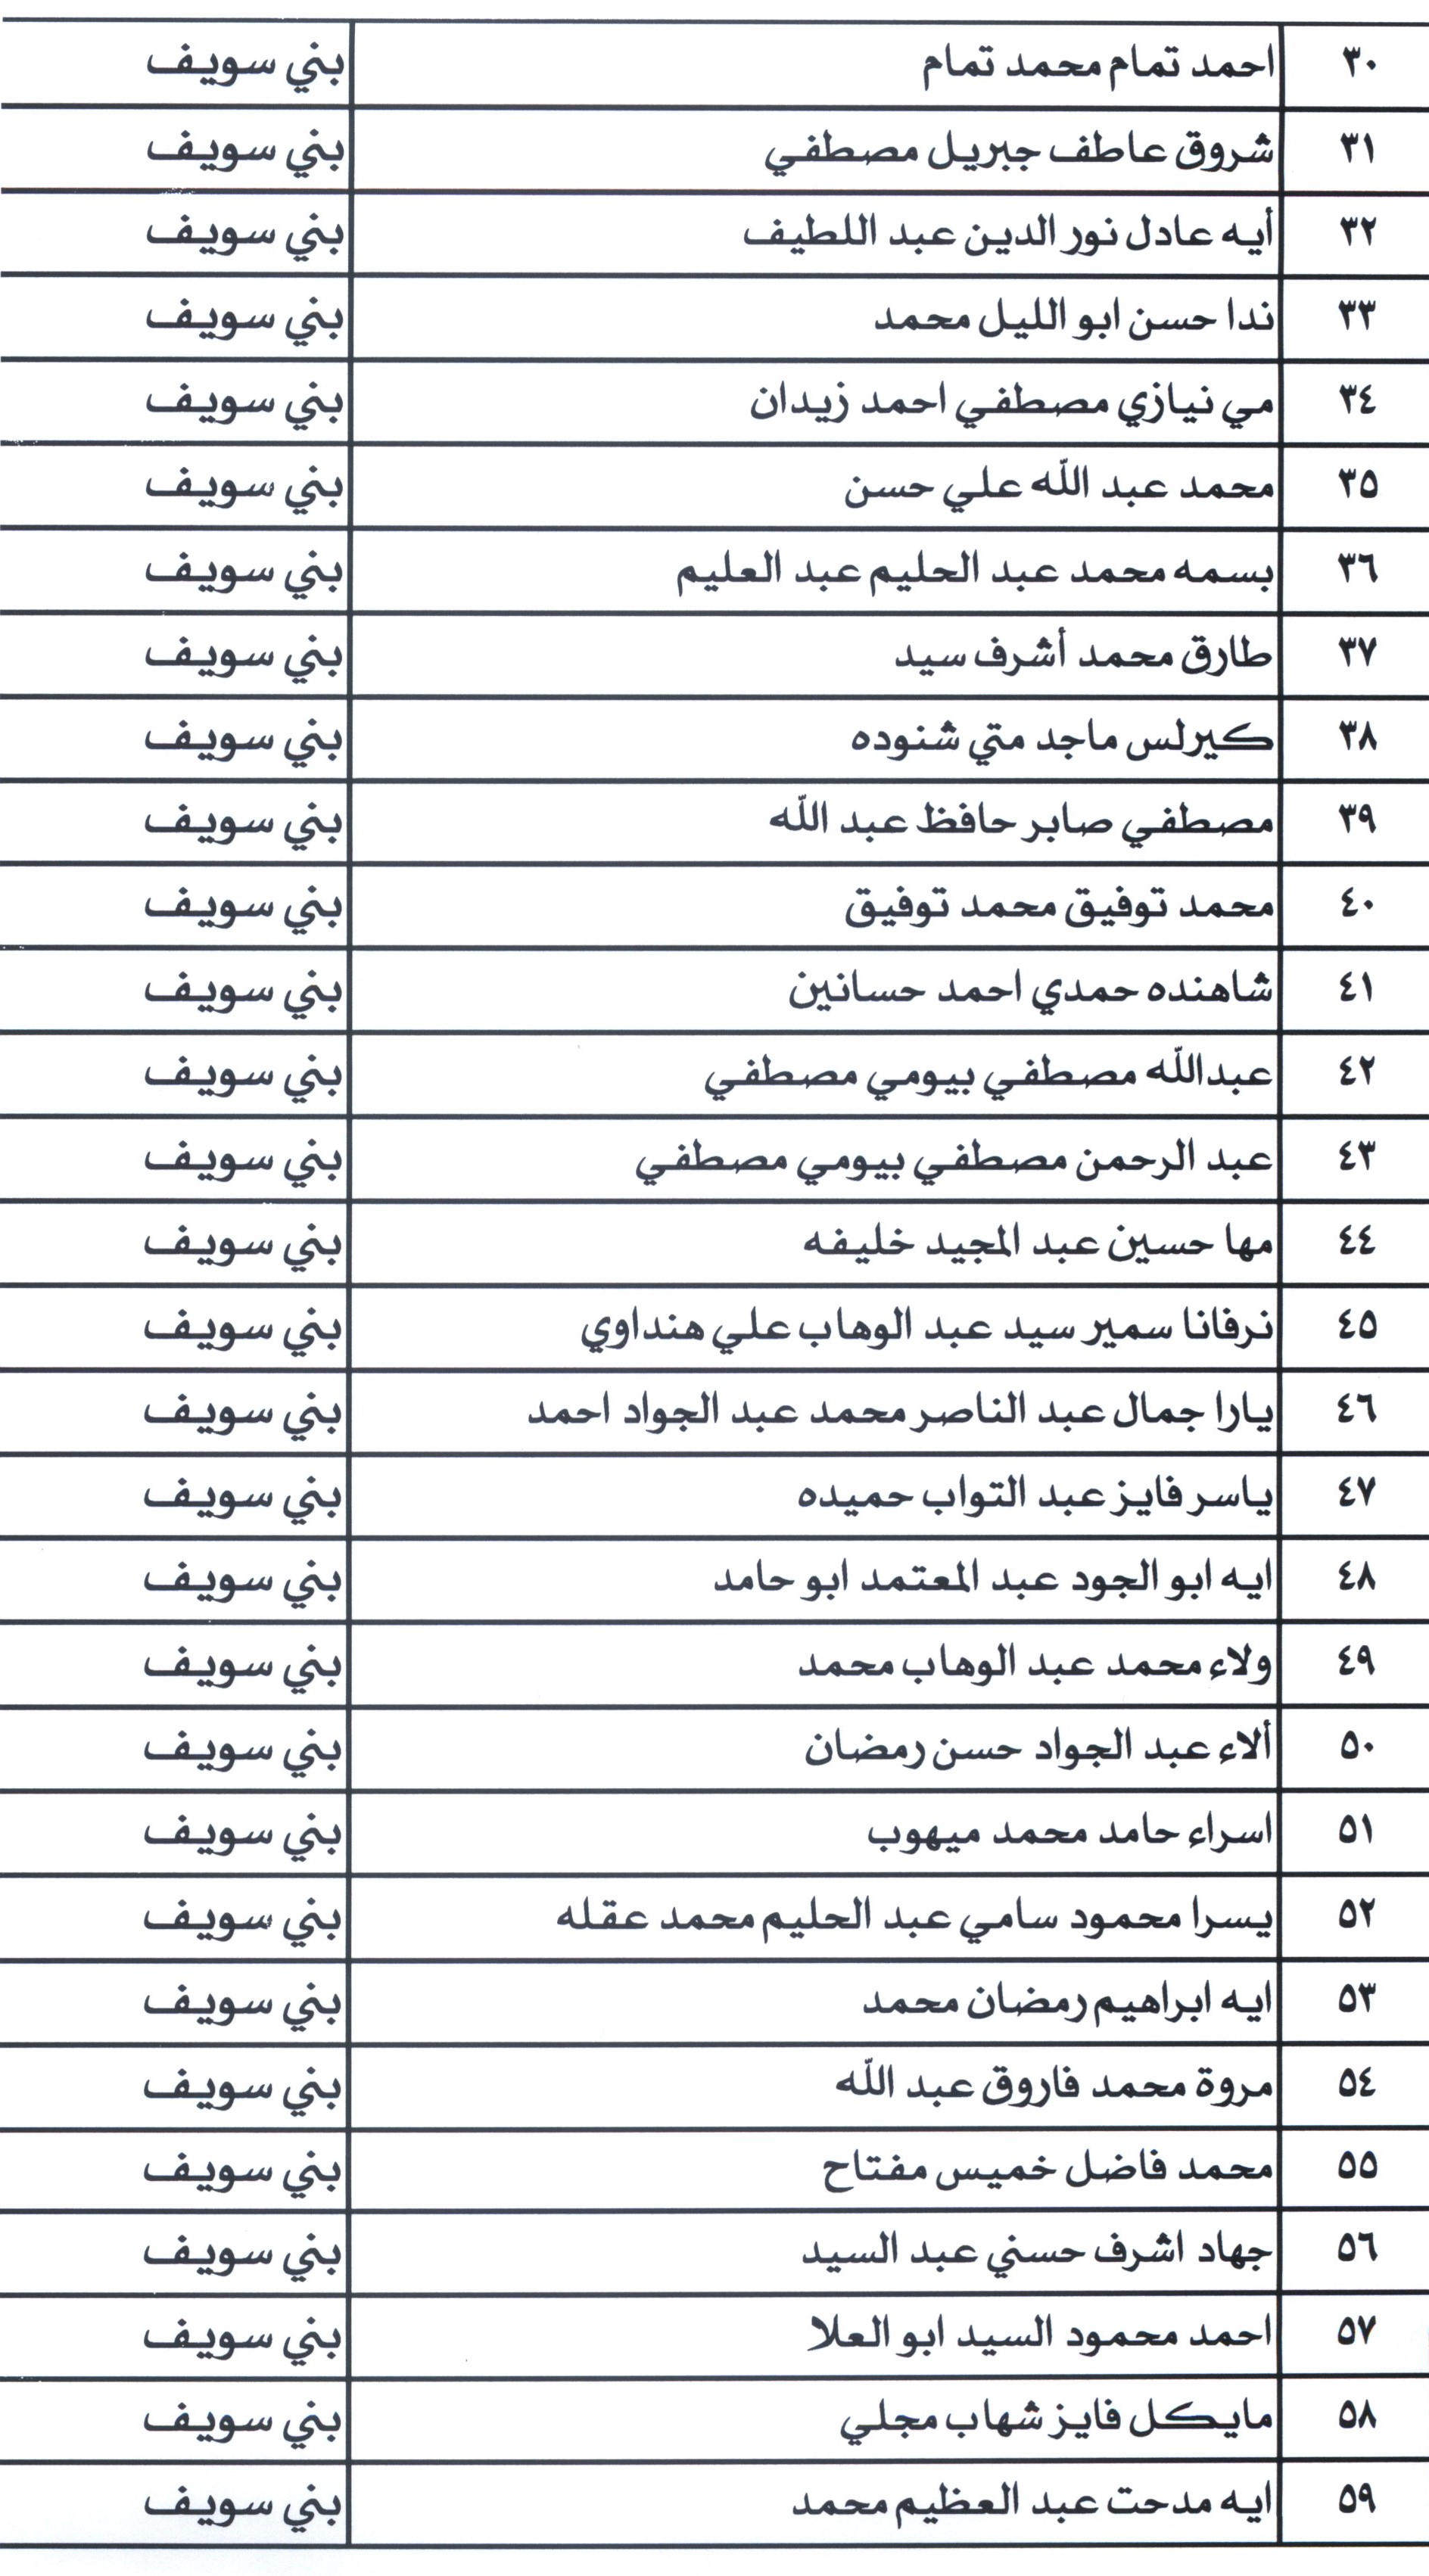 أسماء مرشحى شغل الوظائف ببمحافظة بنى سويف (2)